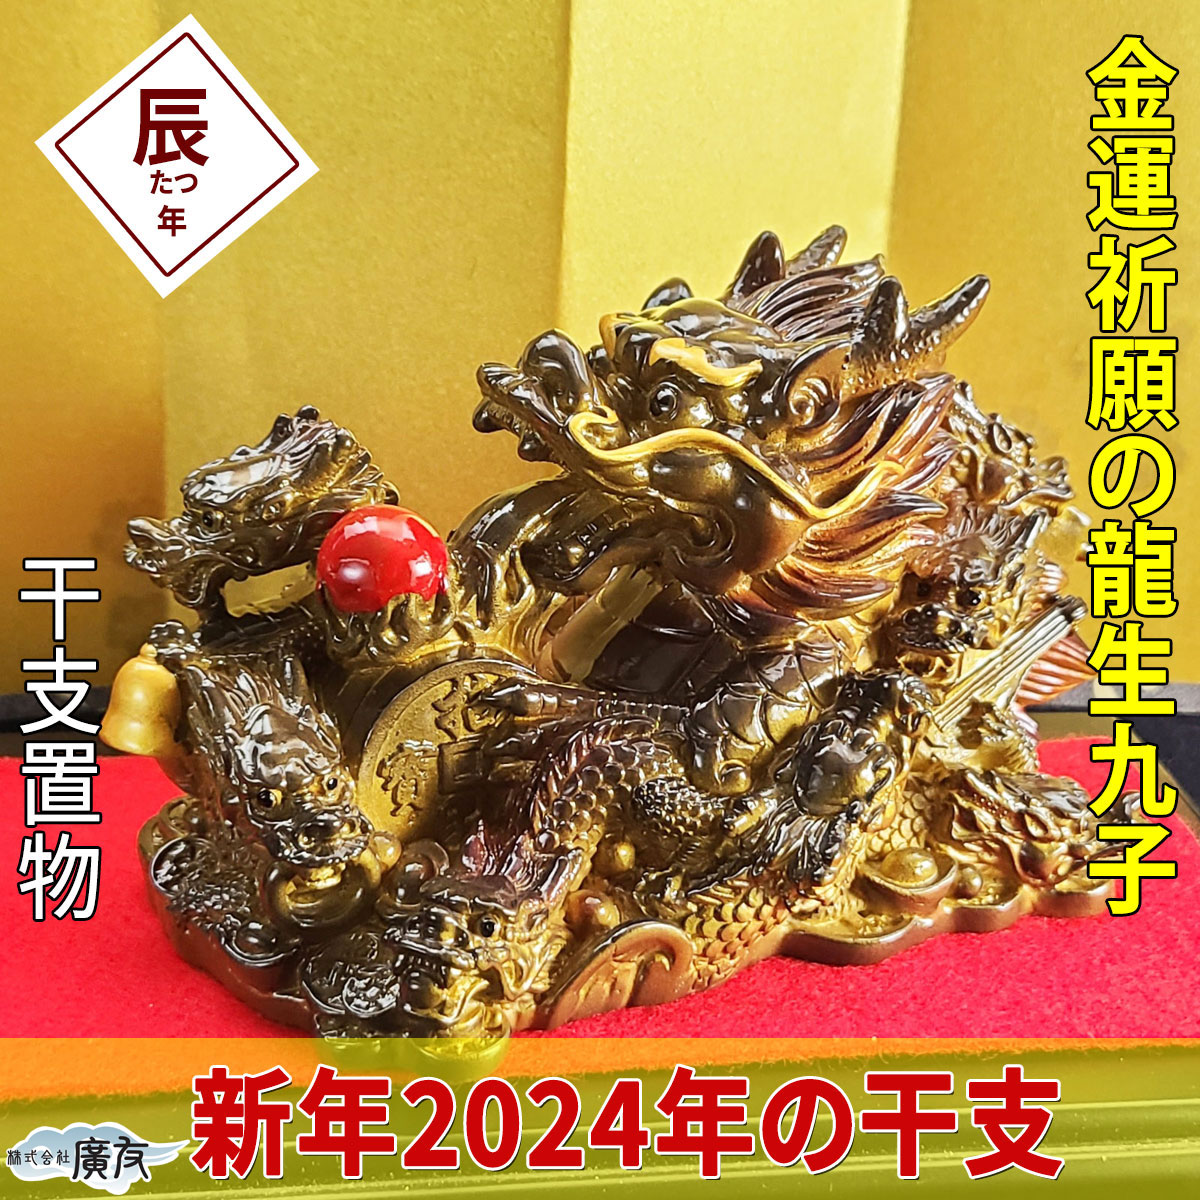 2024年 干支 辰 龍 中 銅製 置物 オブジェ ドラゴン 干支飾り - 小物